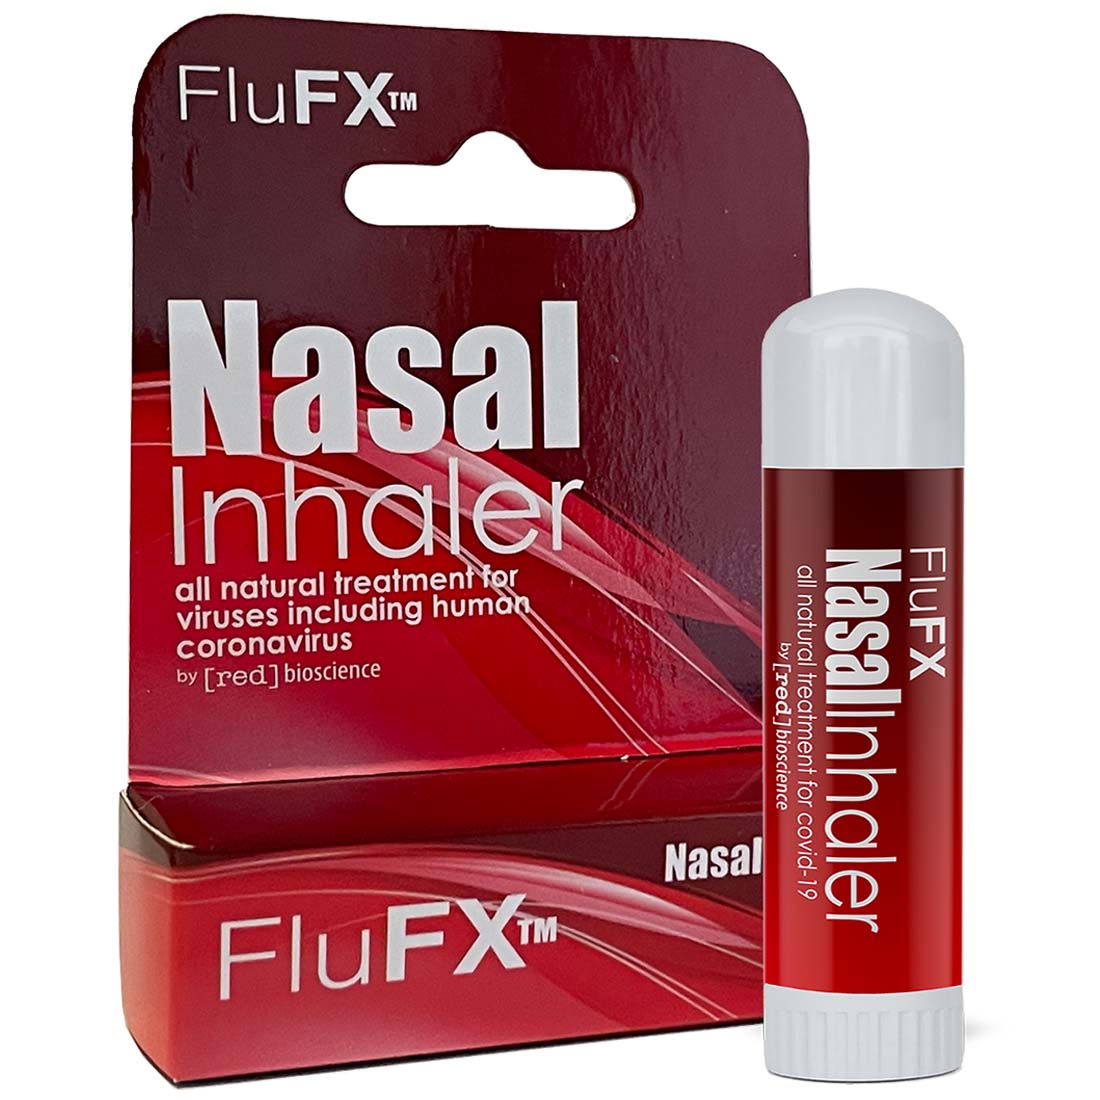 FluFX Nasal Inhaler Stick for Colds, Flu & Viruses